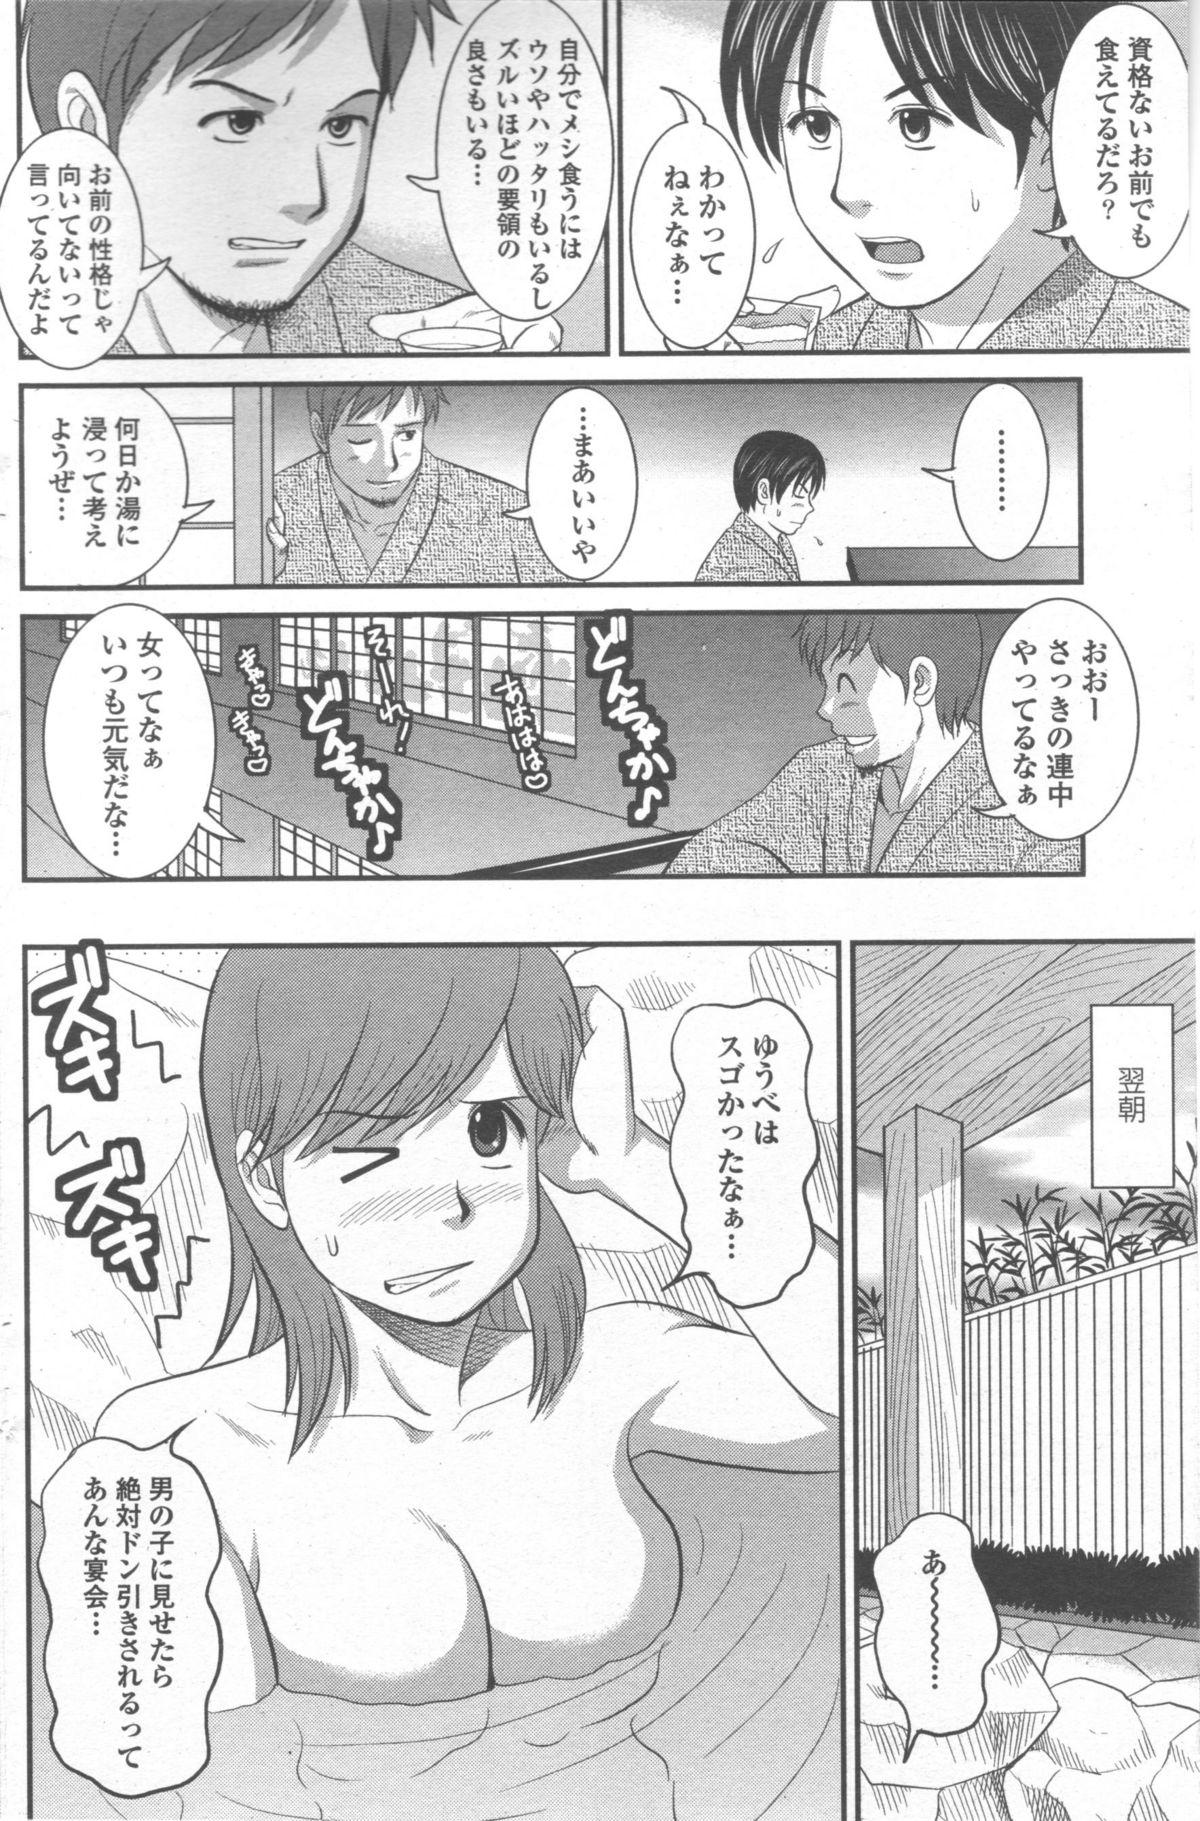 Tats Haken no Muuko-san 9 Mms - Page 7